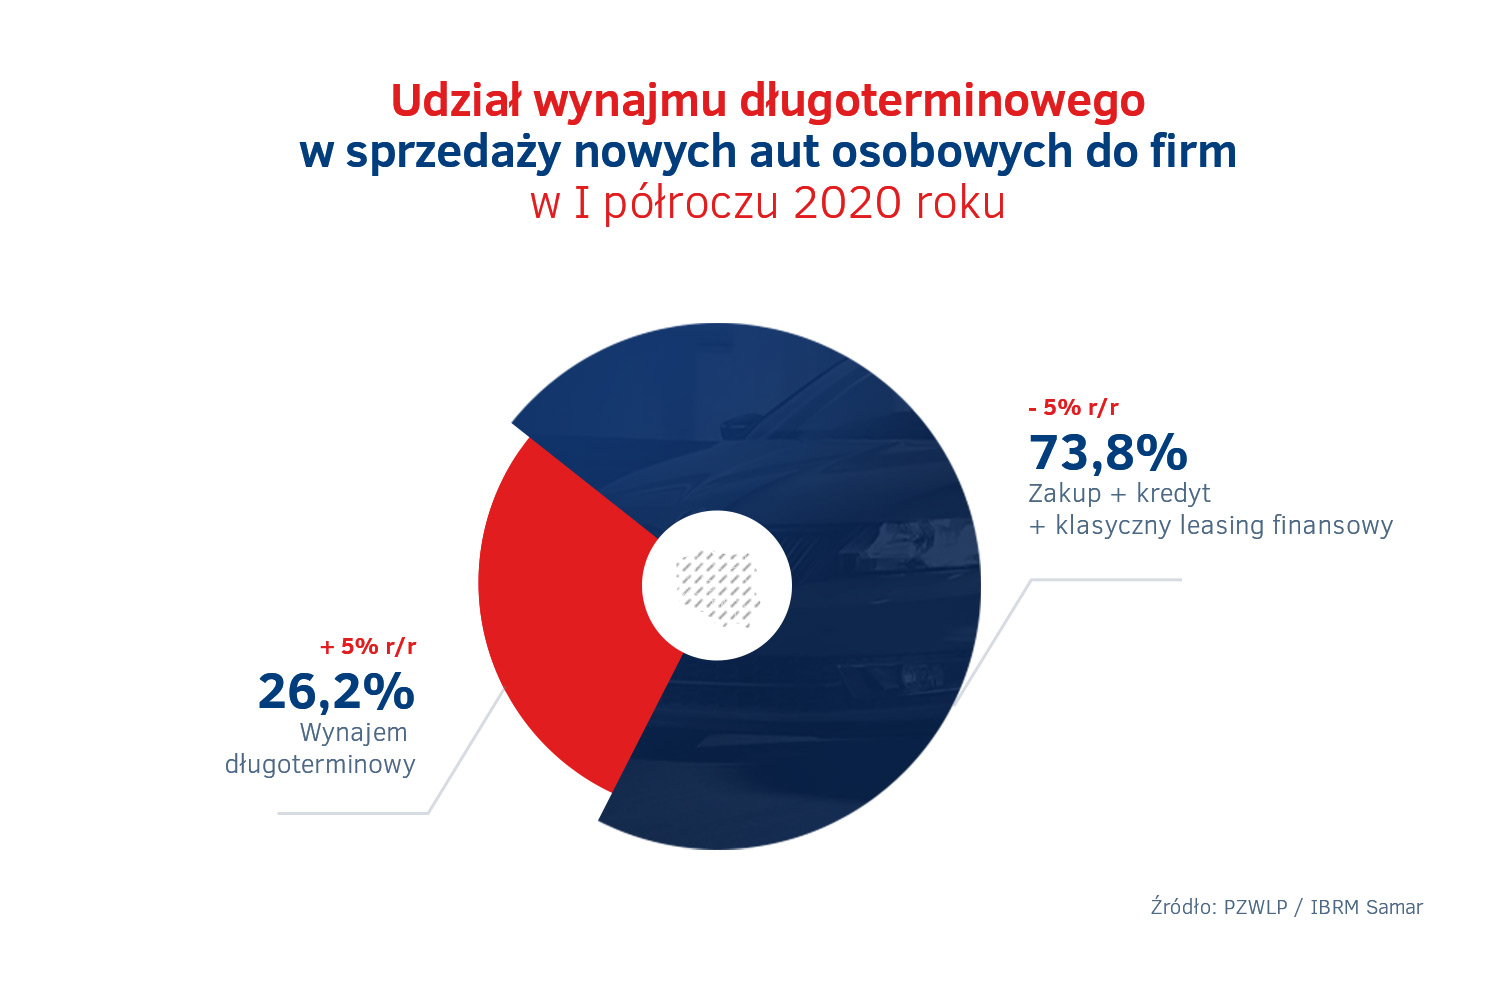 Udzial wynajmu dlugoterminowego w sprzedazy nowych aut w Polsce – I polrocze 2020